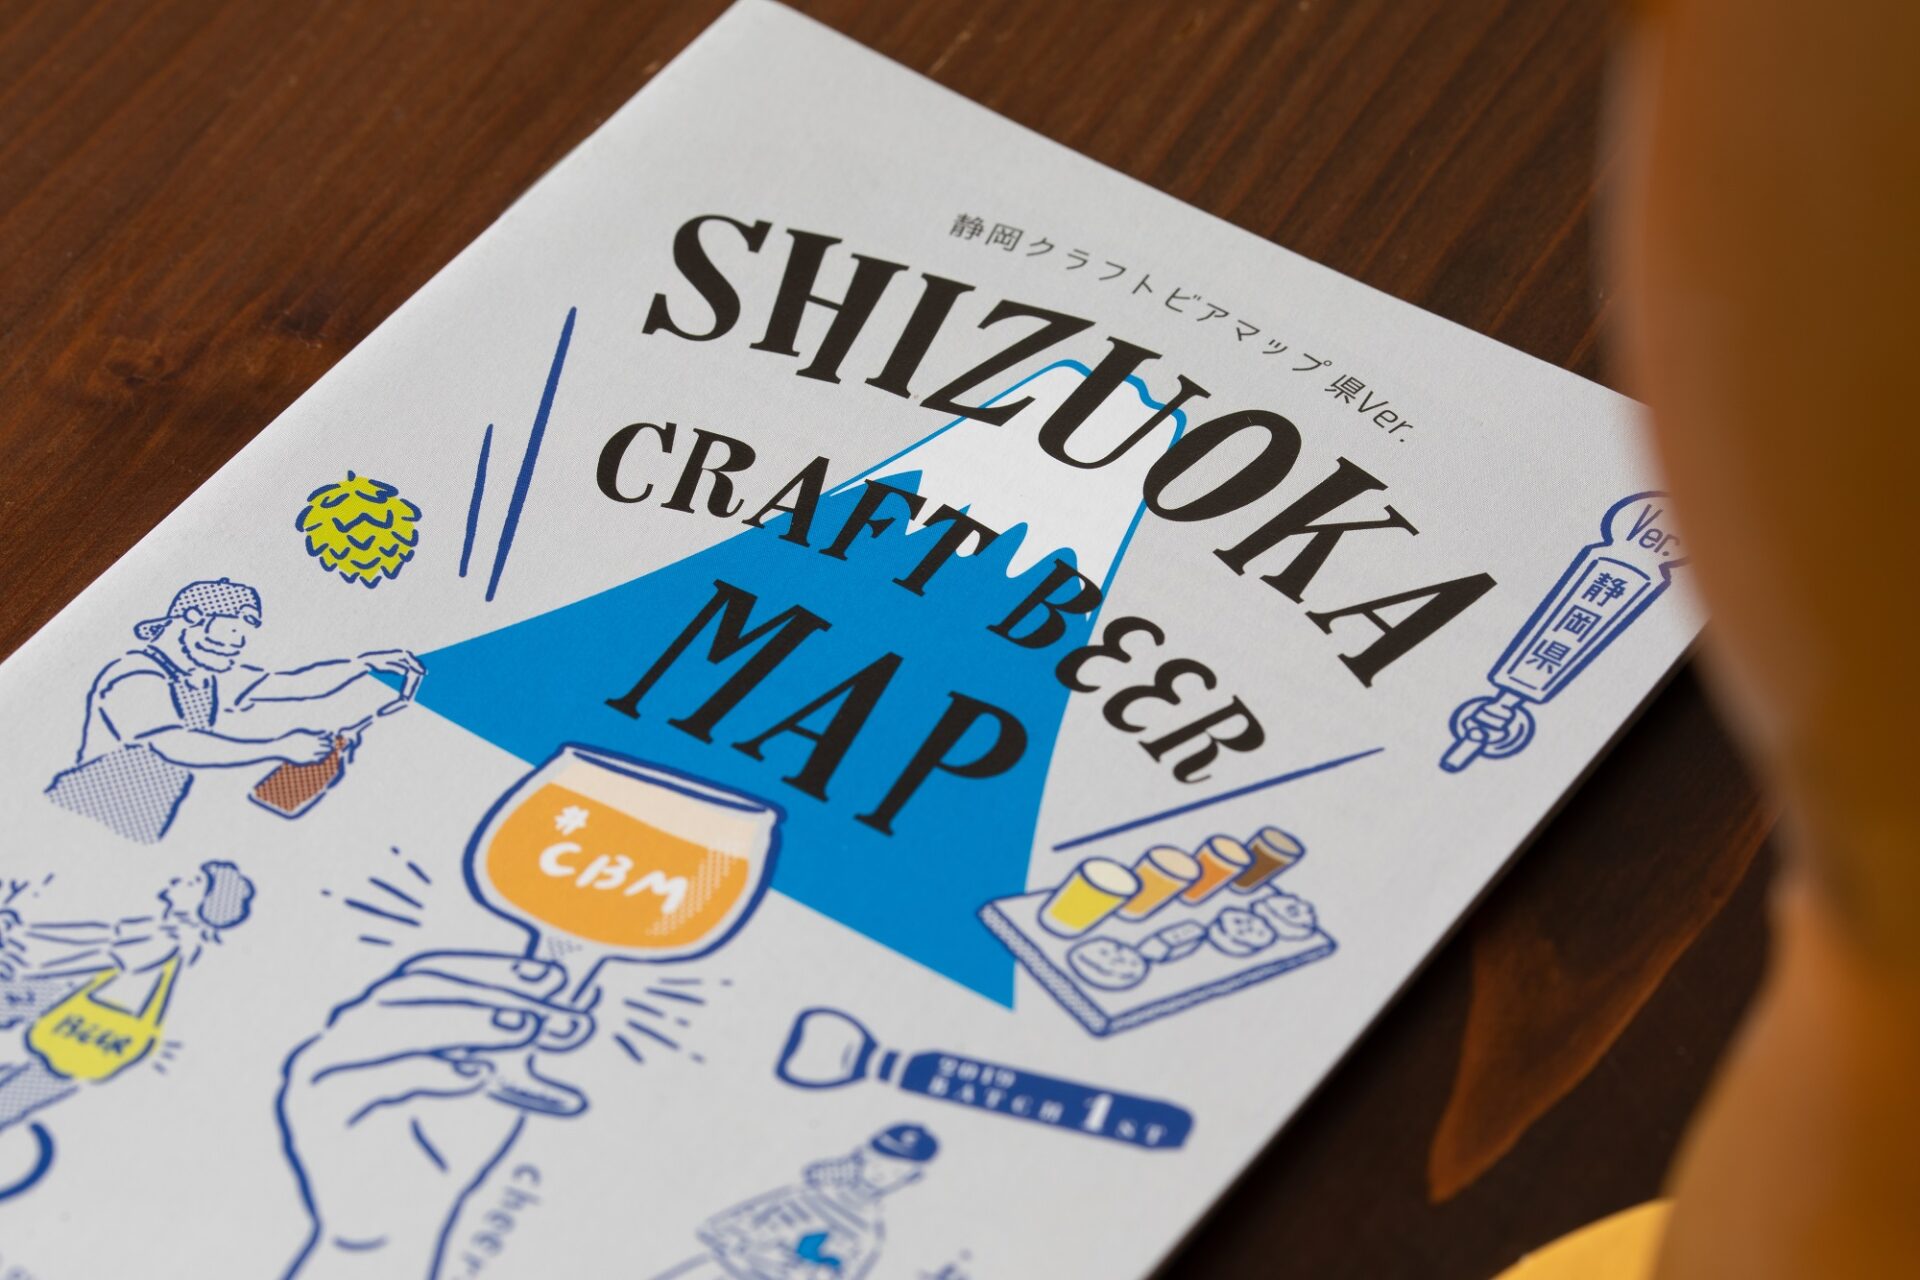 『静岡クラフトビアマップ』は地元のビール好きの熱意が集結し、2017年から発行されている無料冊子。今回取材をした小島直哉さんも製作メンバーのひとりだ。市内のビアバーに置かれているので、この冊子片手に梯子ビールを楽しもう。